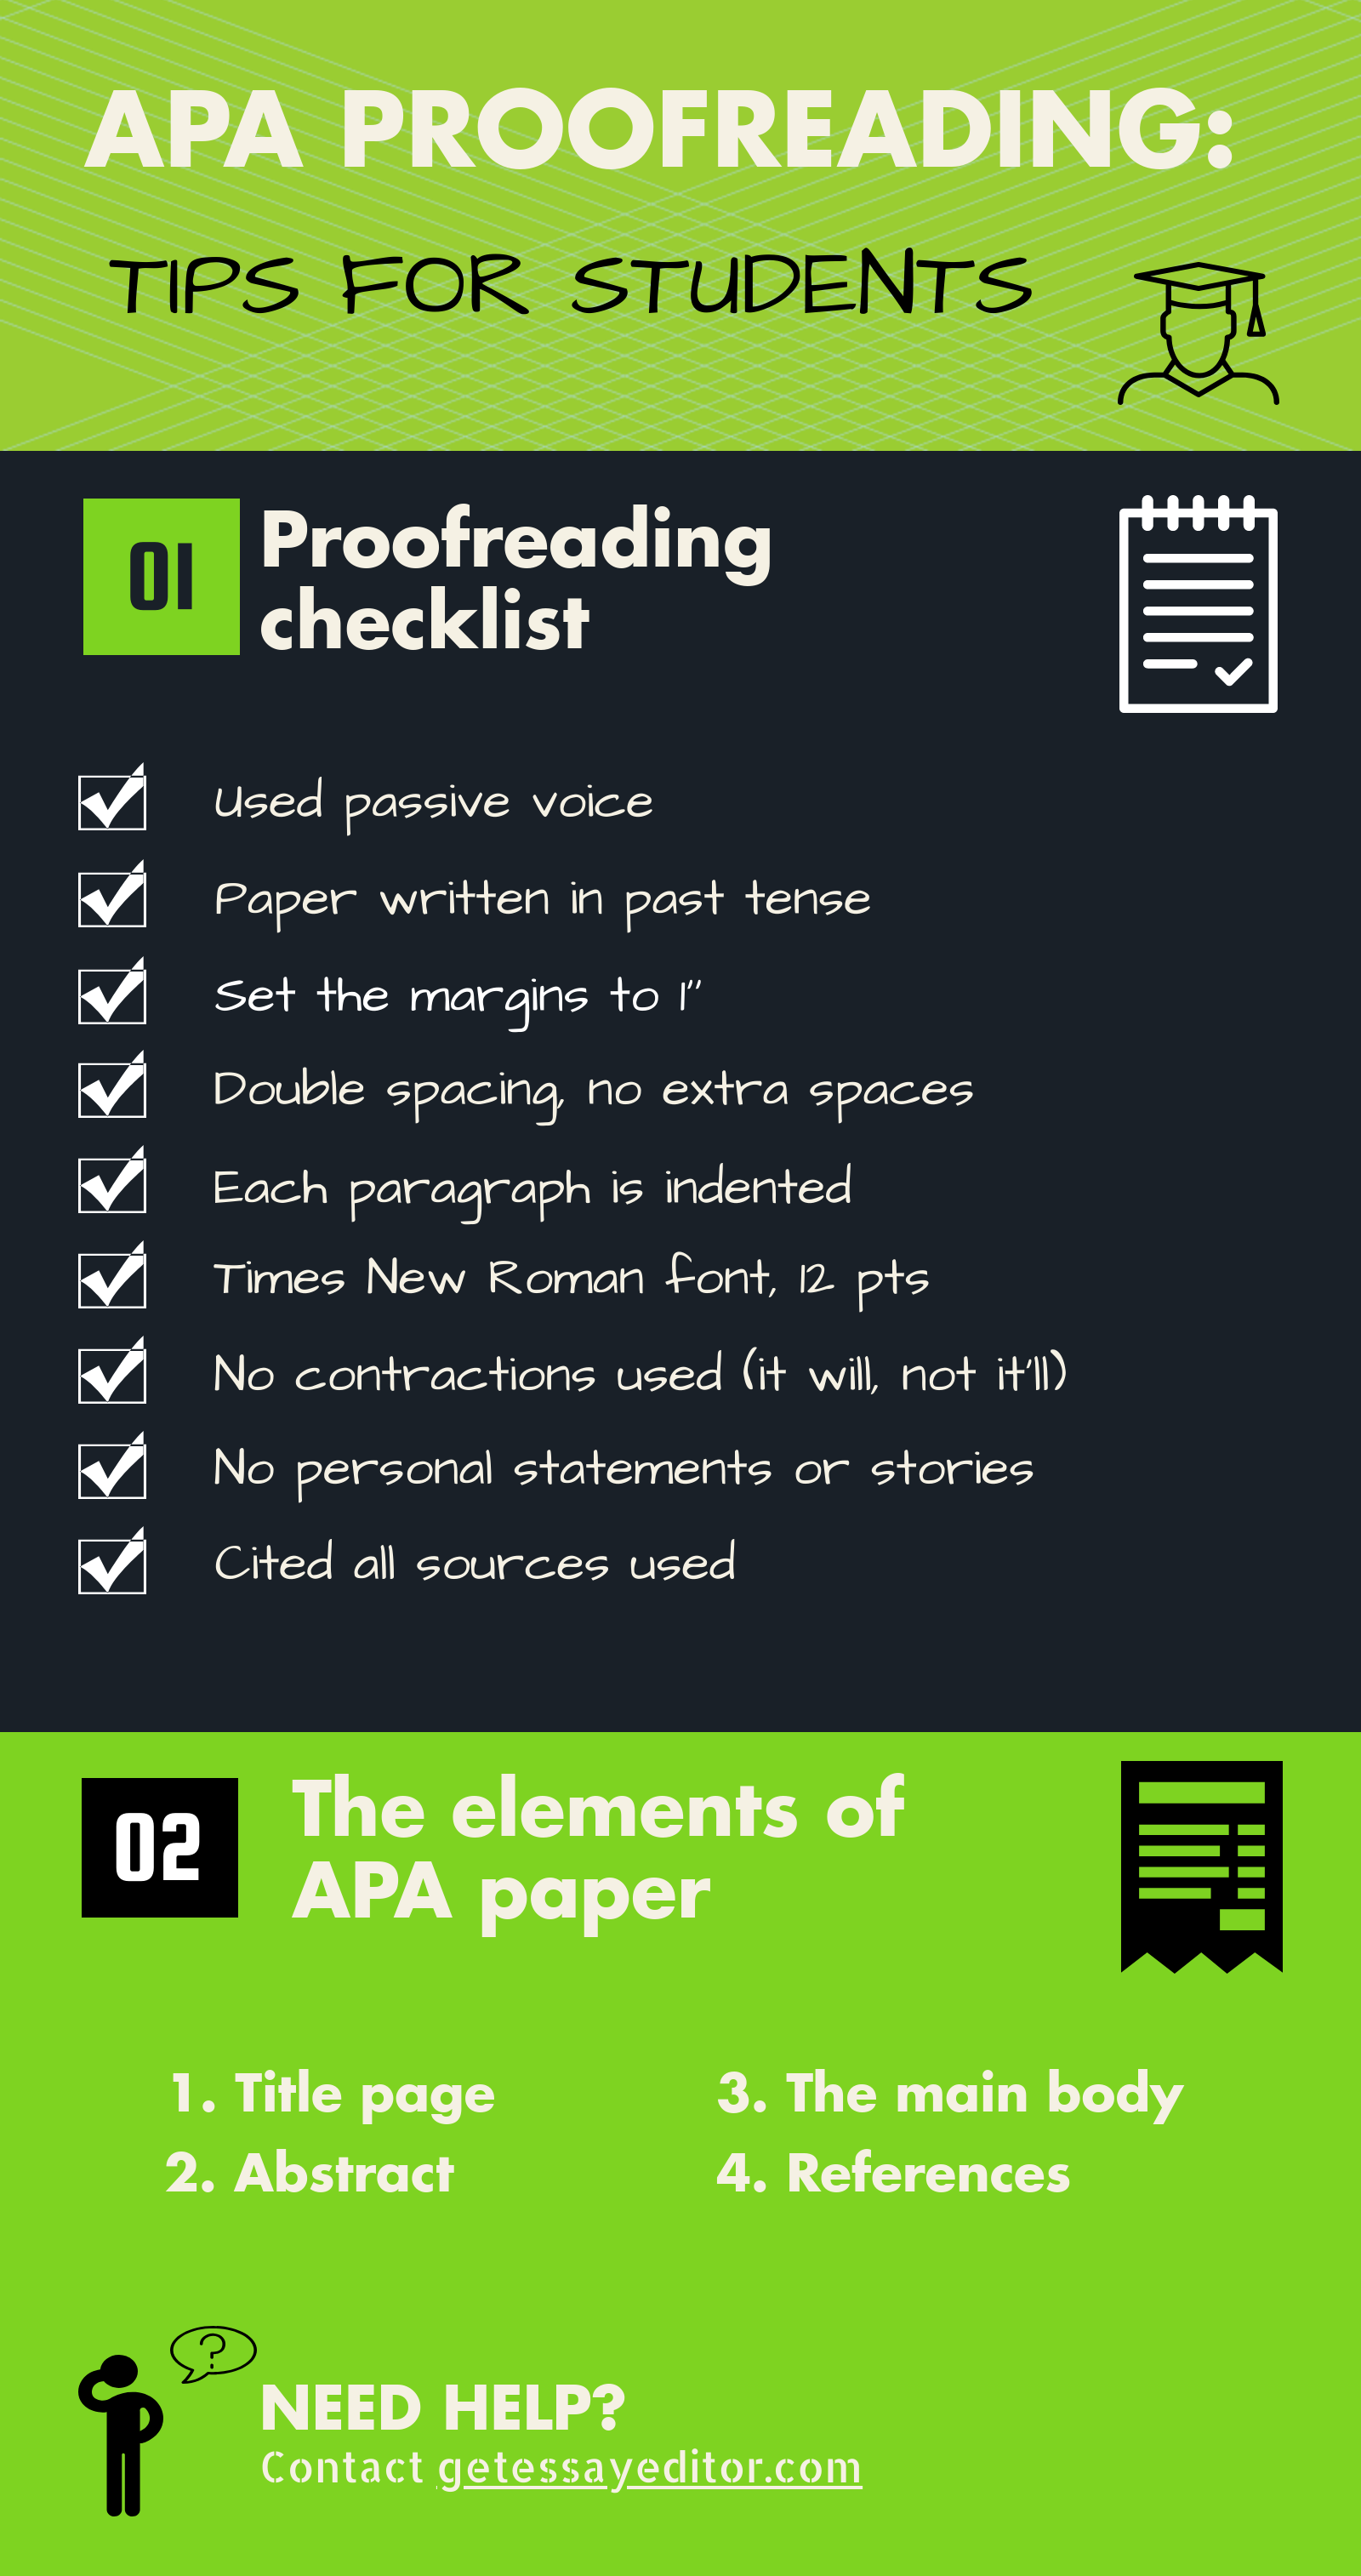 APA proofread checklist